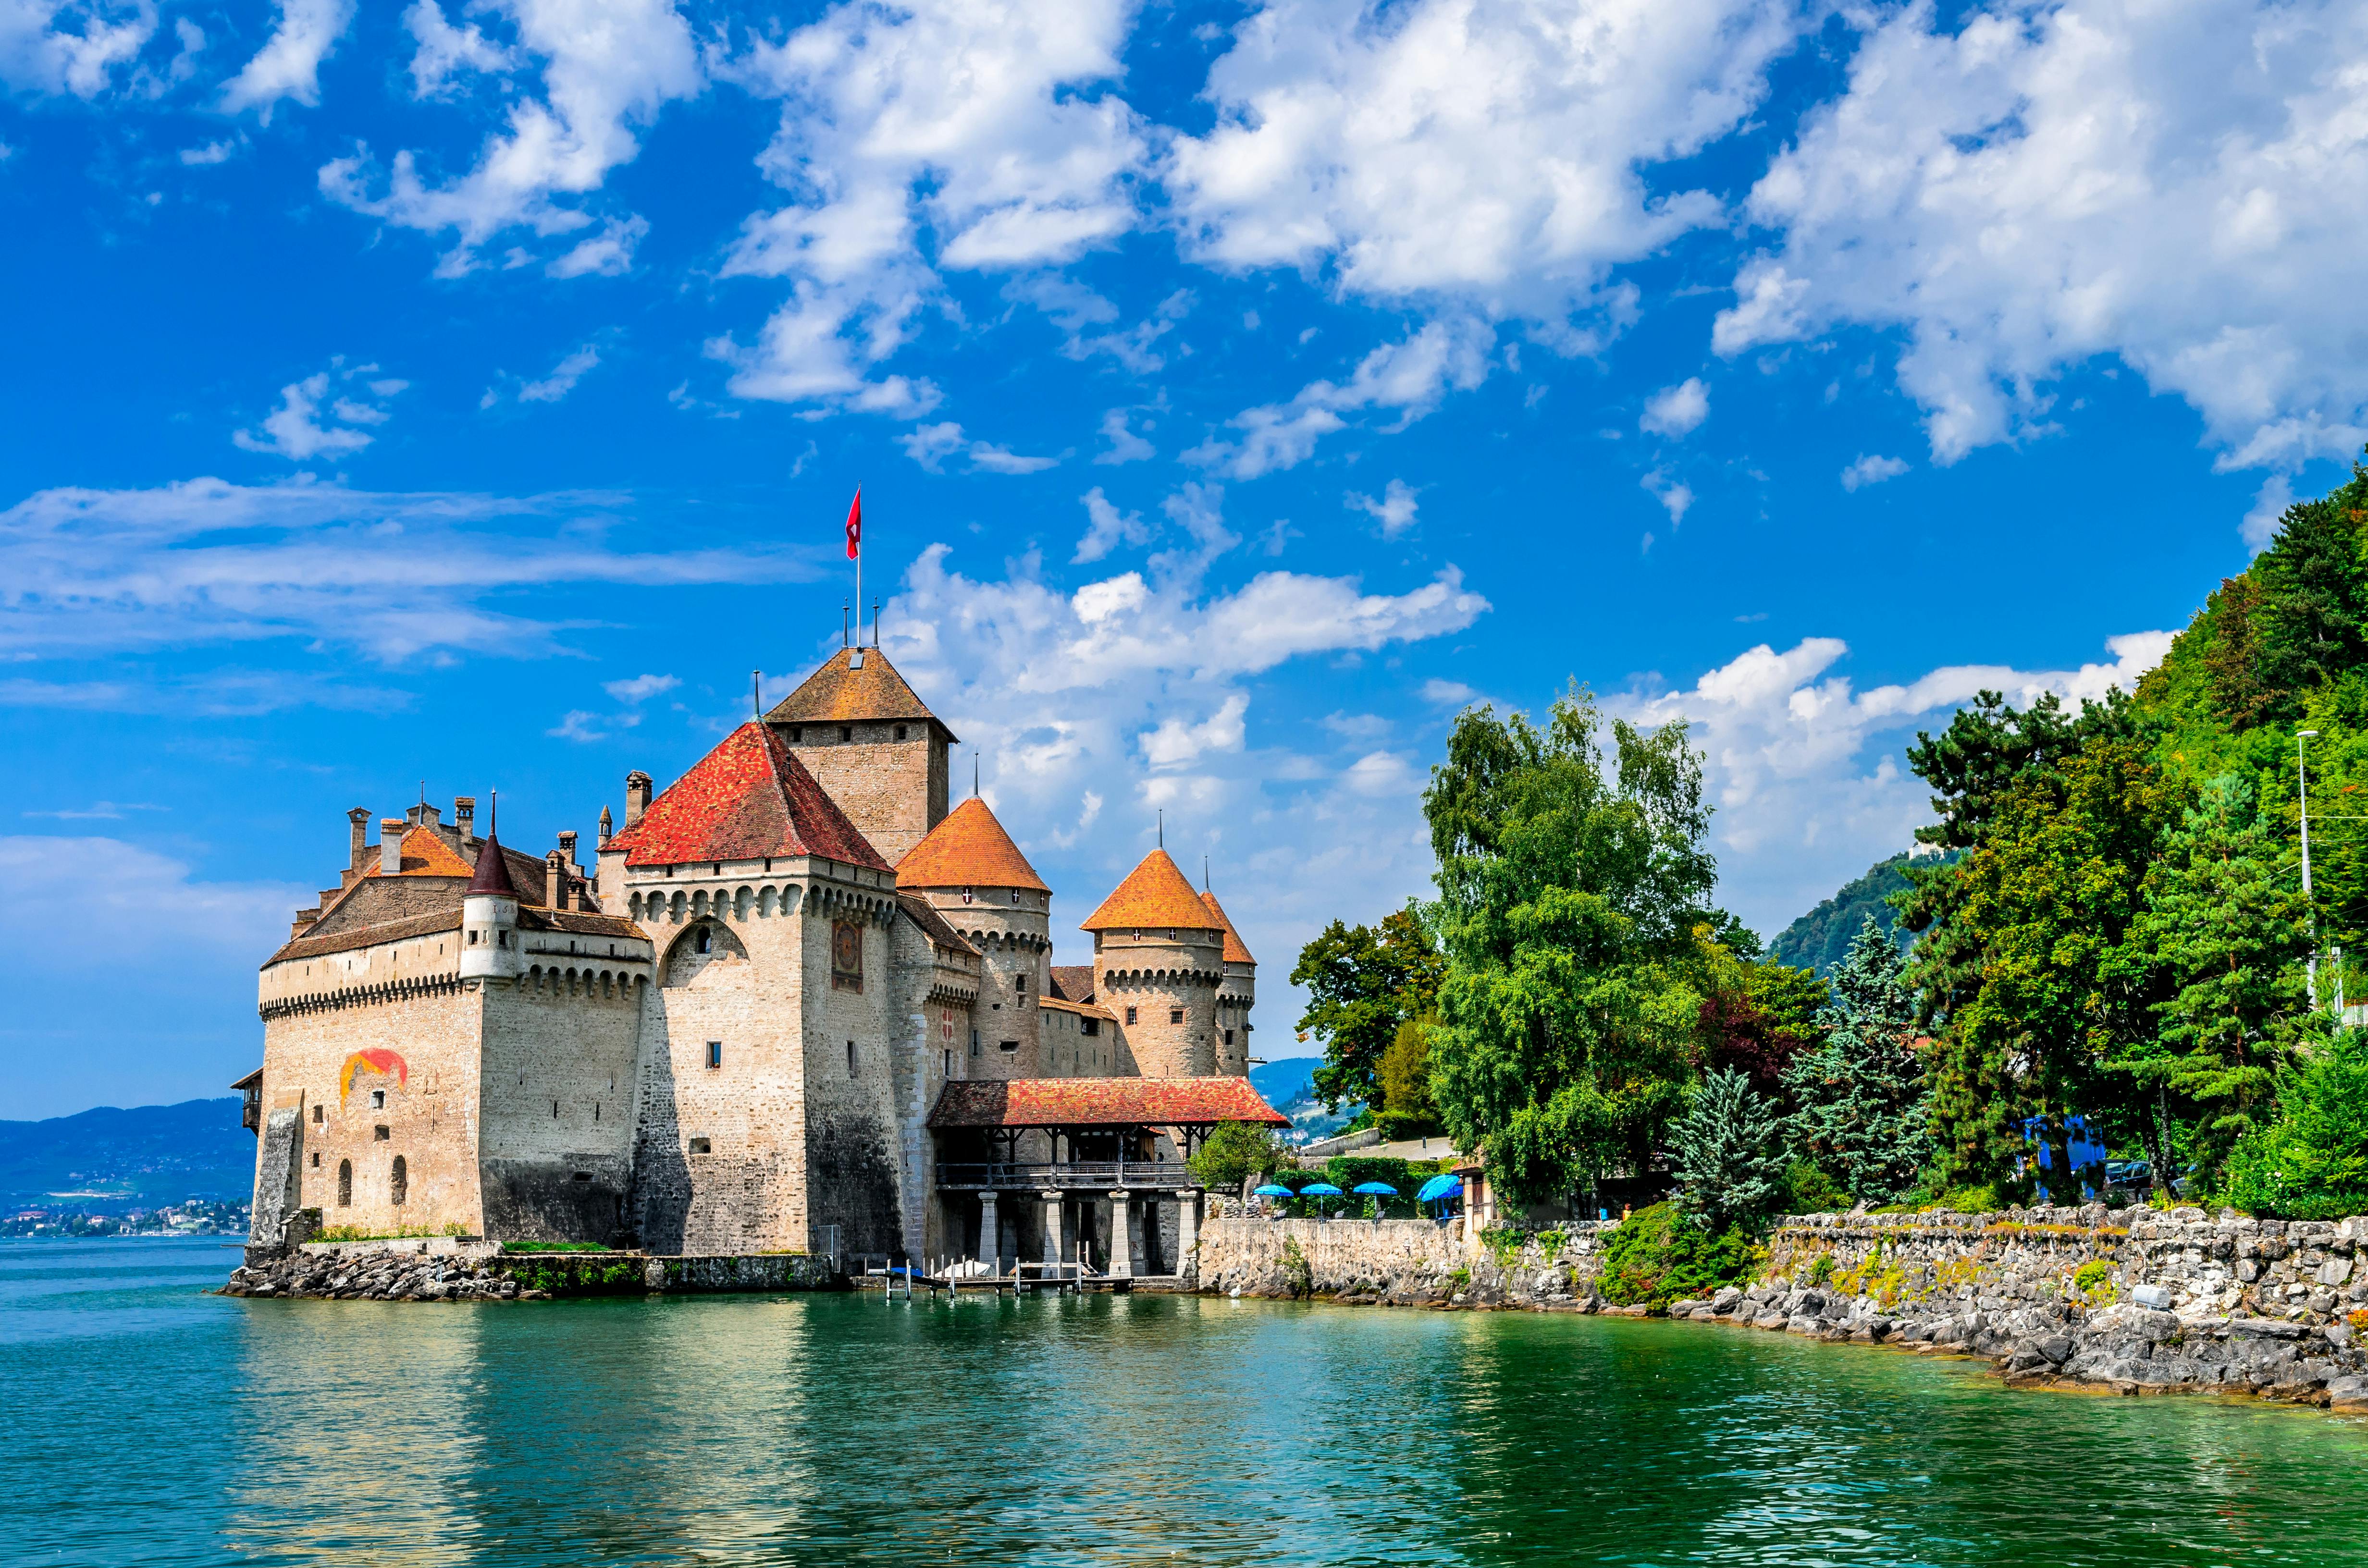 Excursão diurna ao castelo de Montreux e Chillon saindo de Lausanne de ônibus